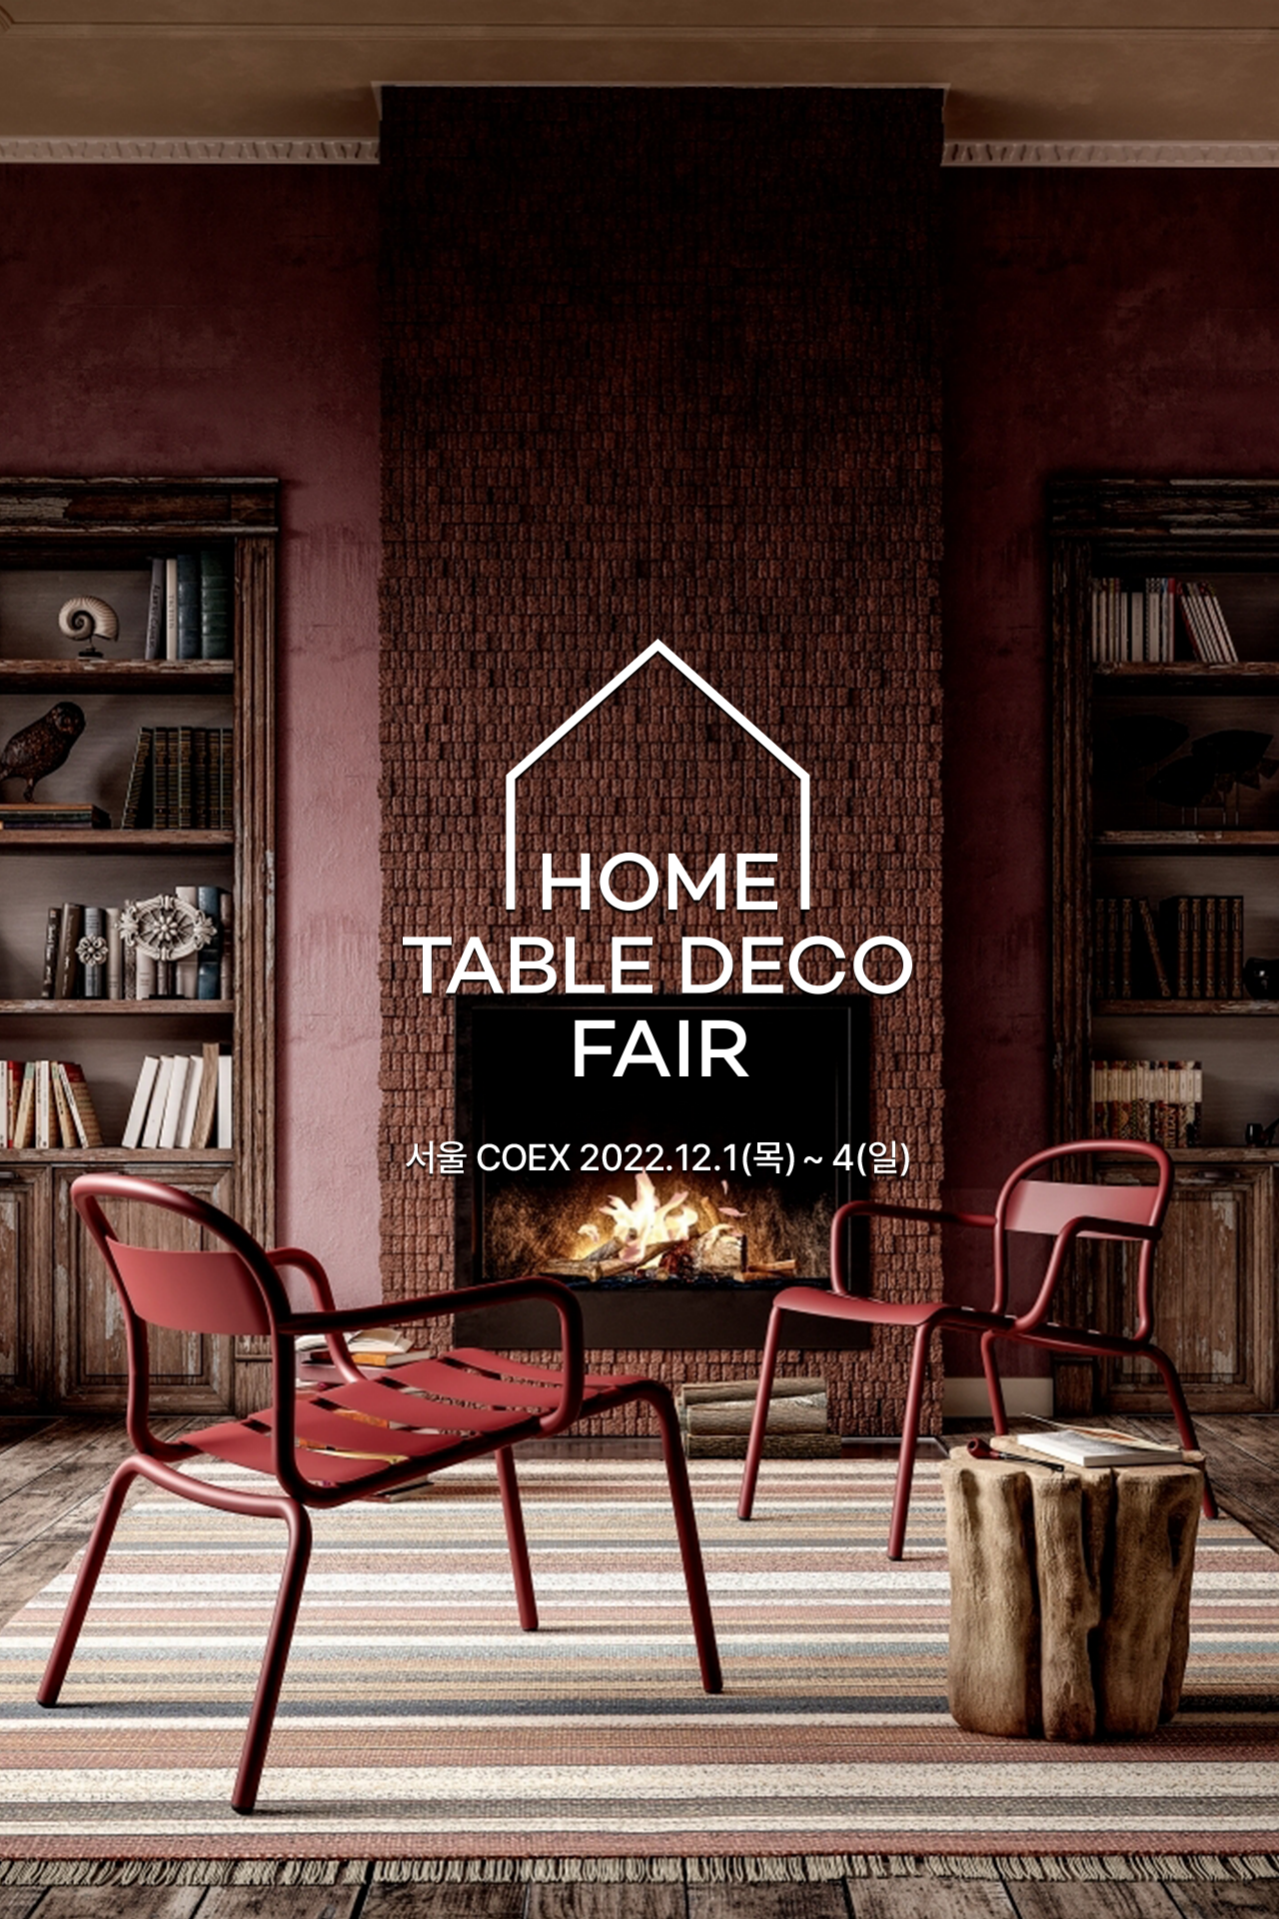 Home Table Deco Fair